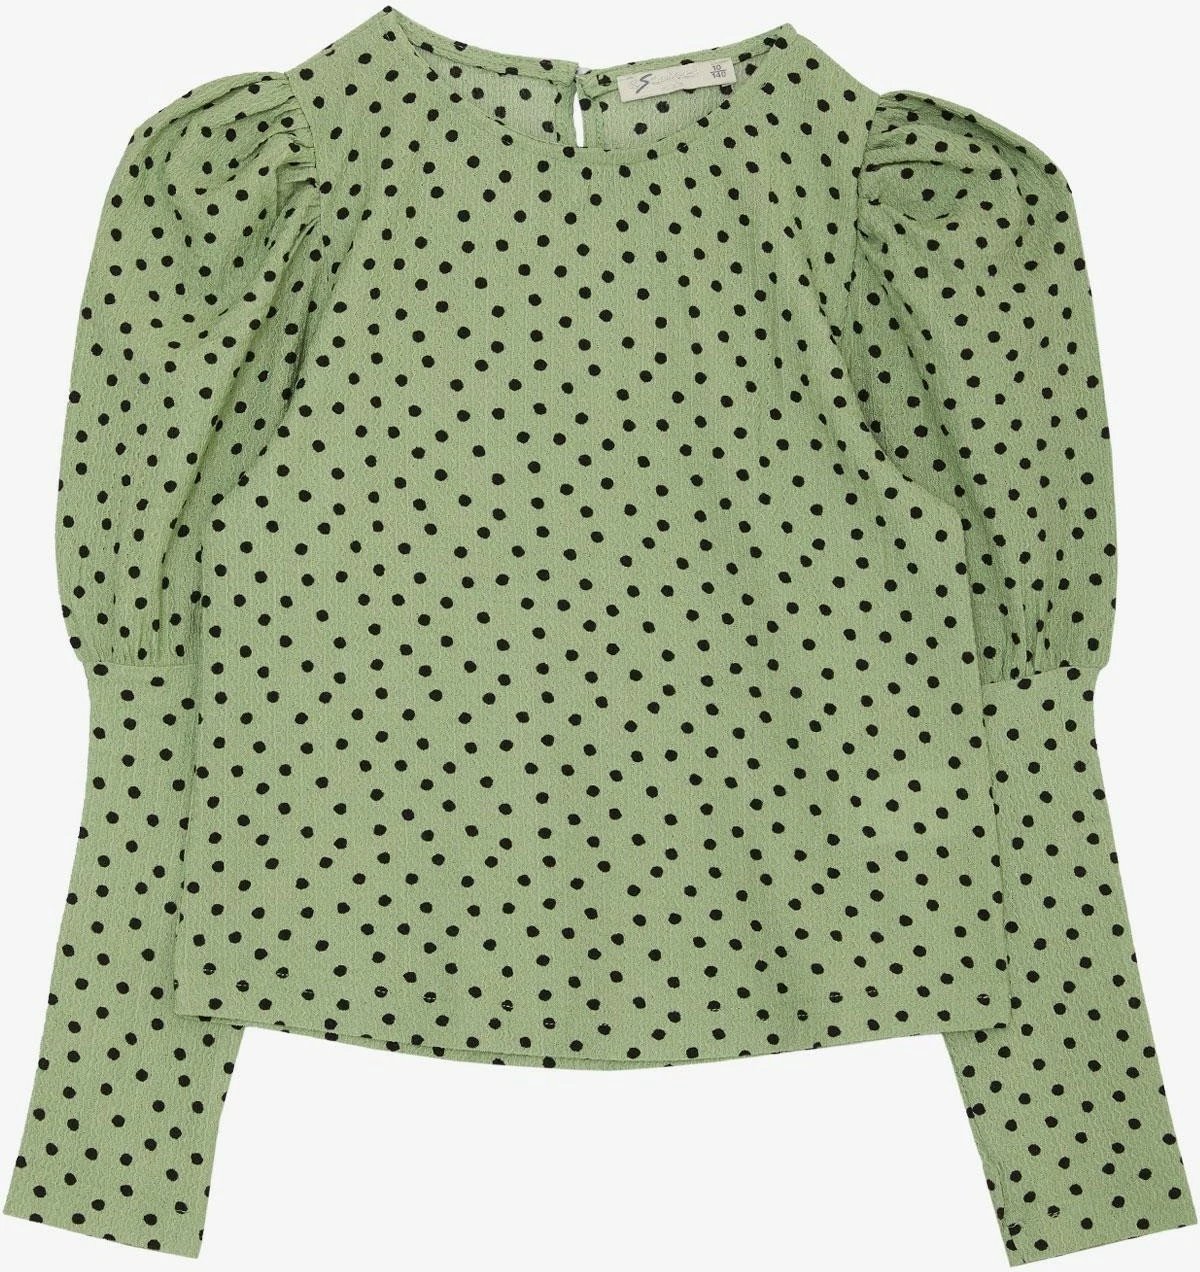 Bluzë për vajza Escabel, e gjelbër